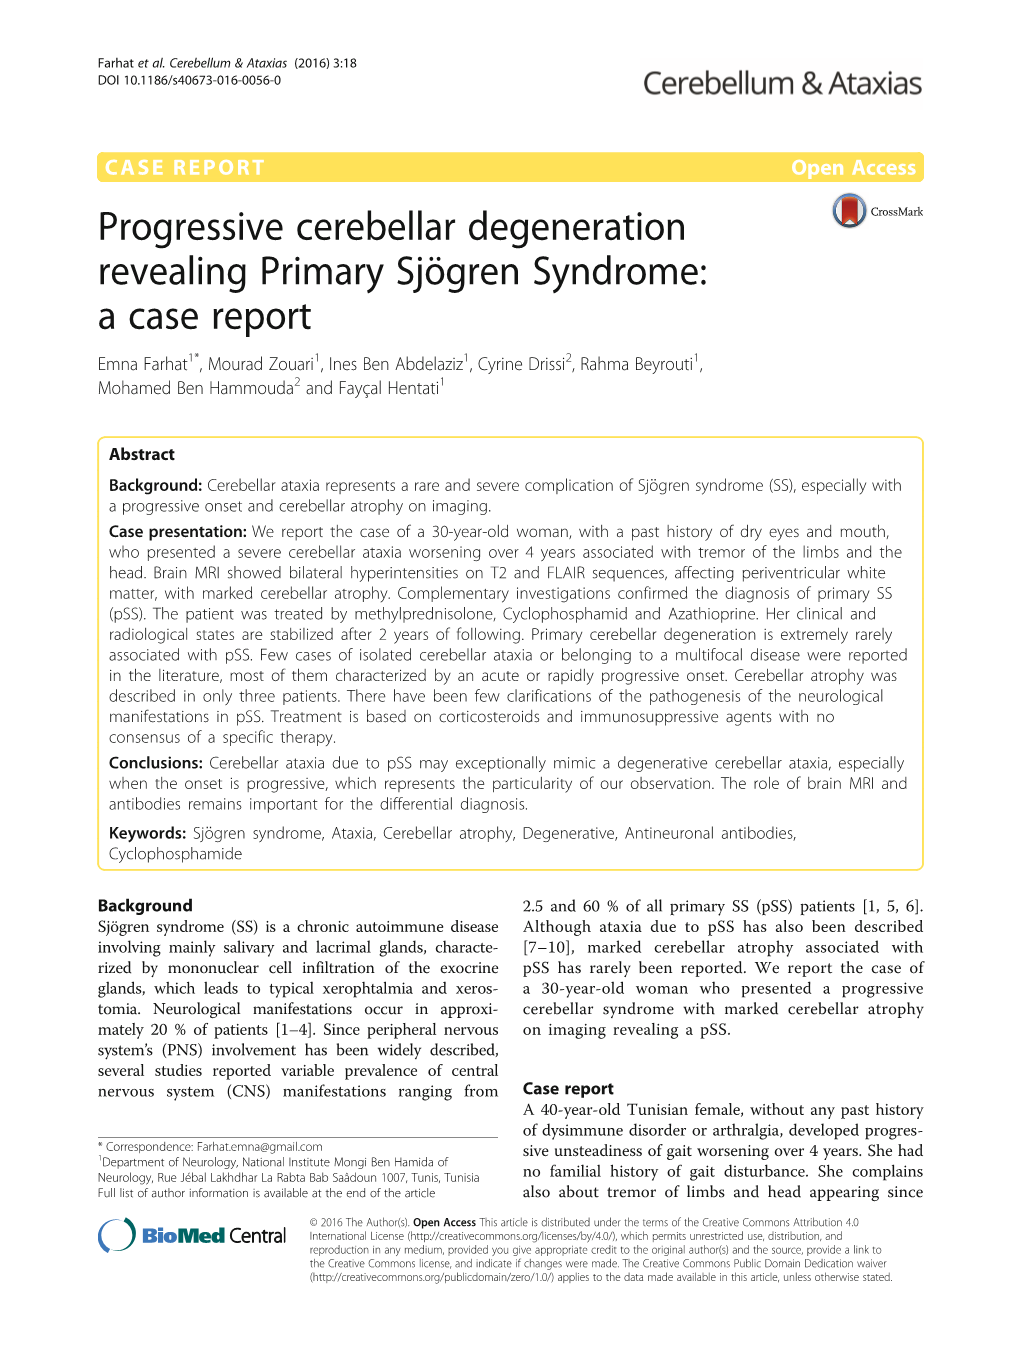 Progressive Cerebellar Degeneration Revealing Primary Sjögren Syndrome